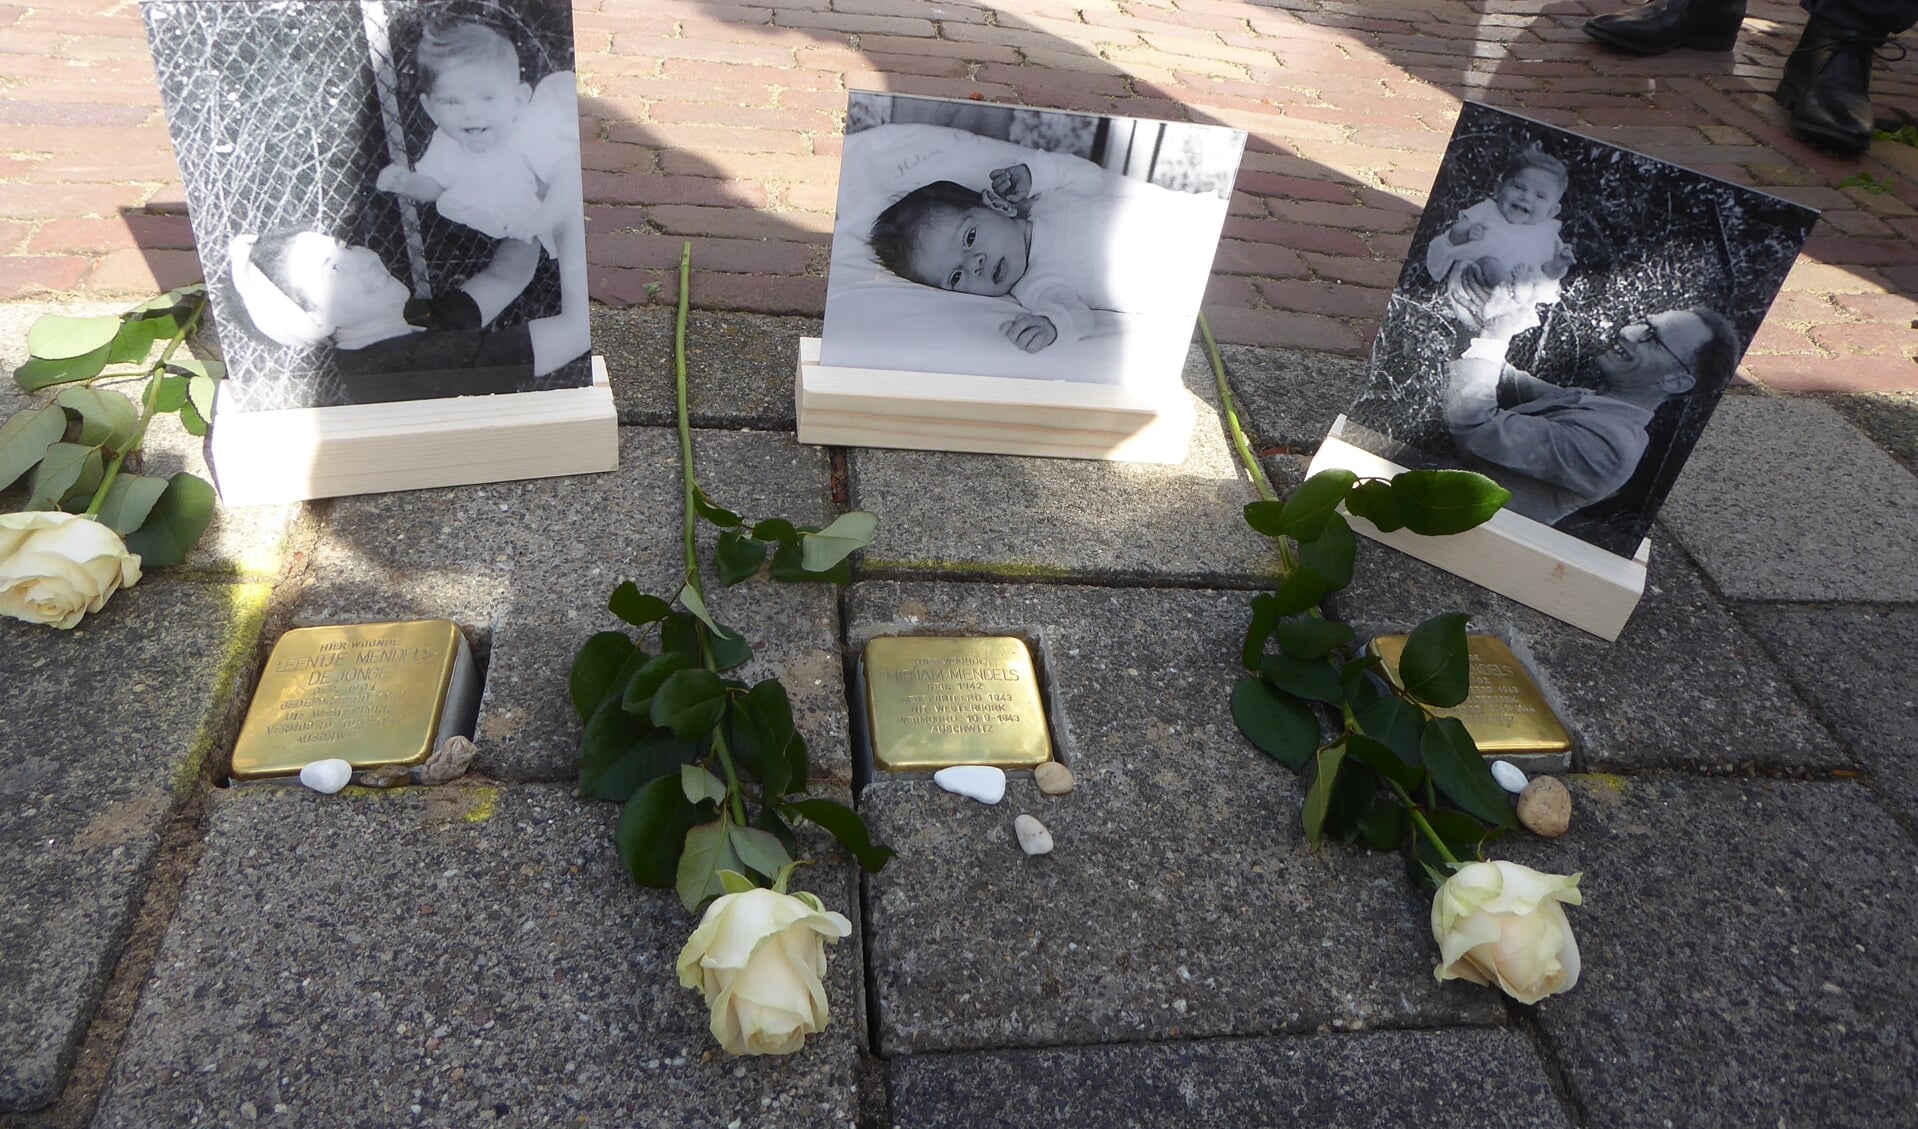 In de Quarles van Uffordstraat werden stolpersteine gelegd ter nagedachtenis aan de familie Mendels.